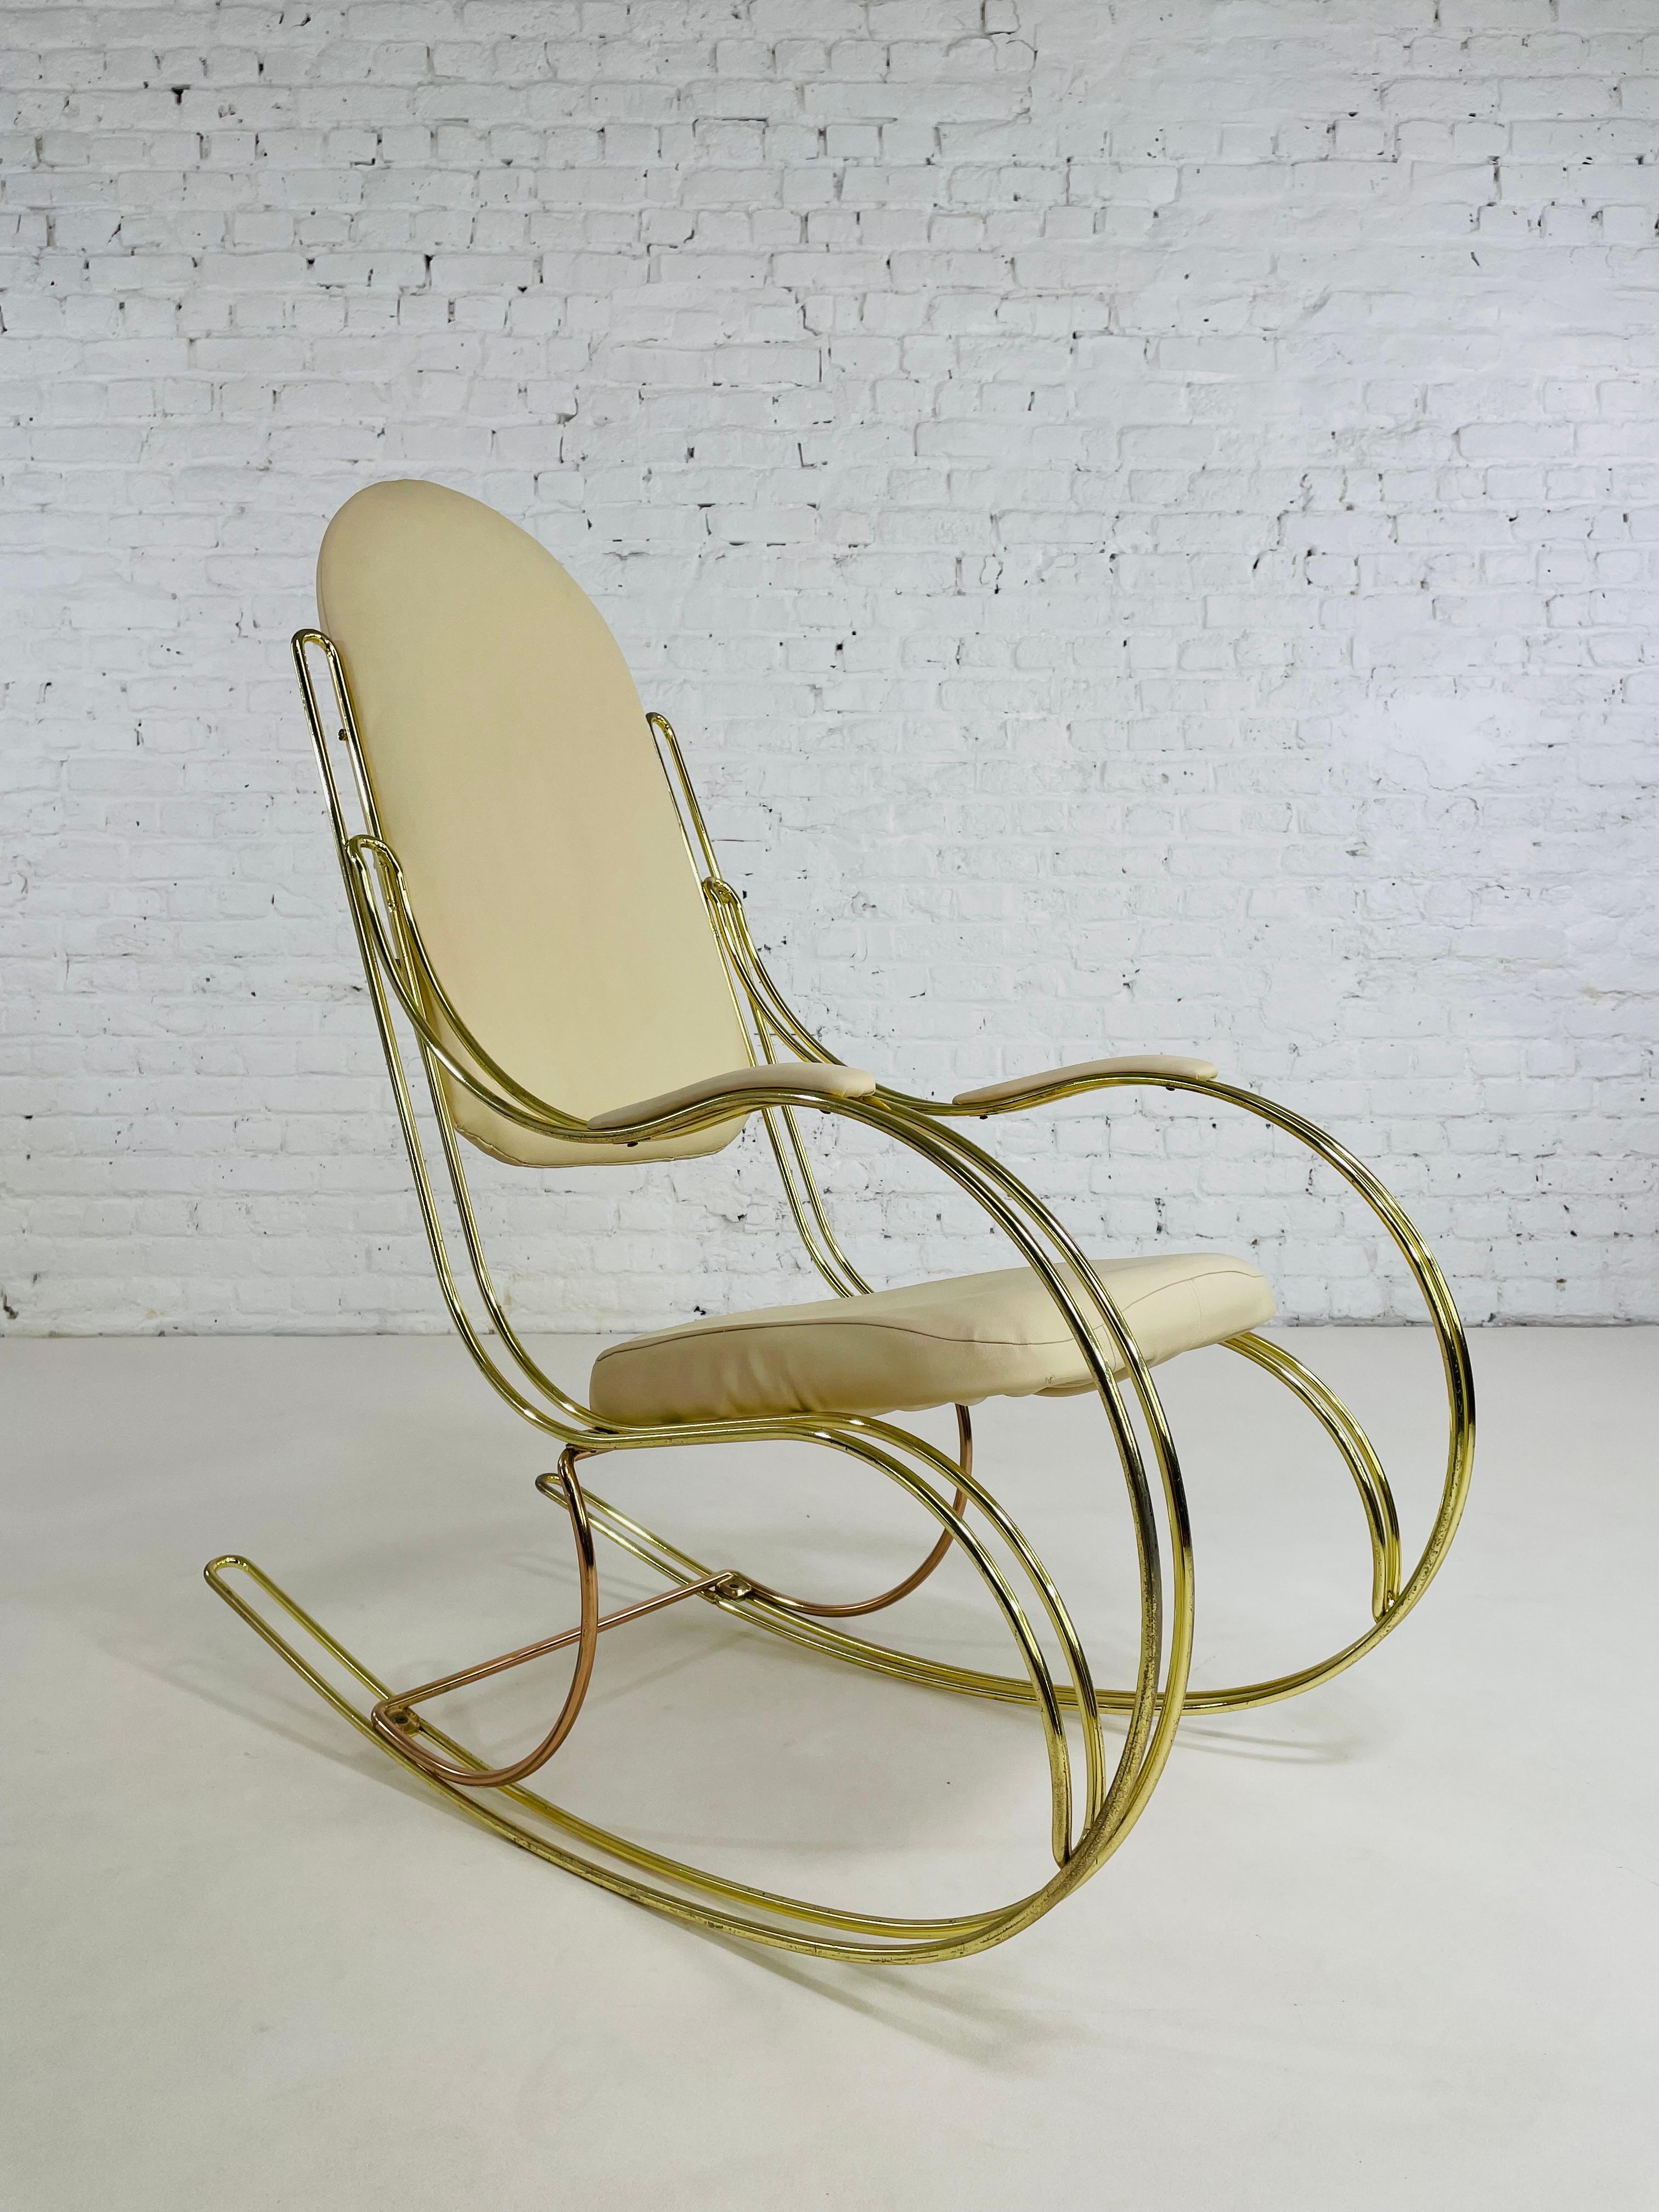 1960er - 1970er Jahre Messing und Beige Kunstleder Schaukelstuhl bestehend aus einem Messing abgerundet und gebogen Messing Struktur mit beige skaï Rückenlehne und Sitz geschmückt.